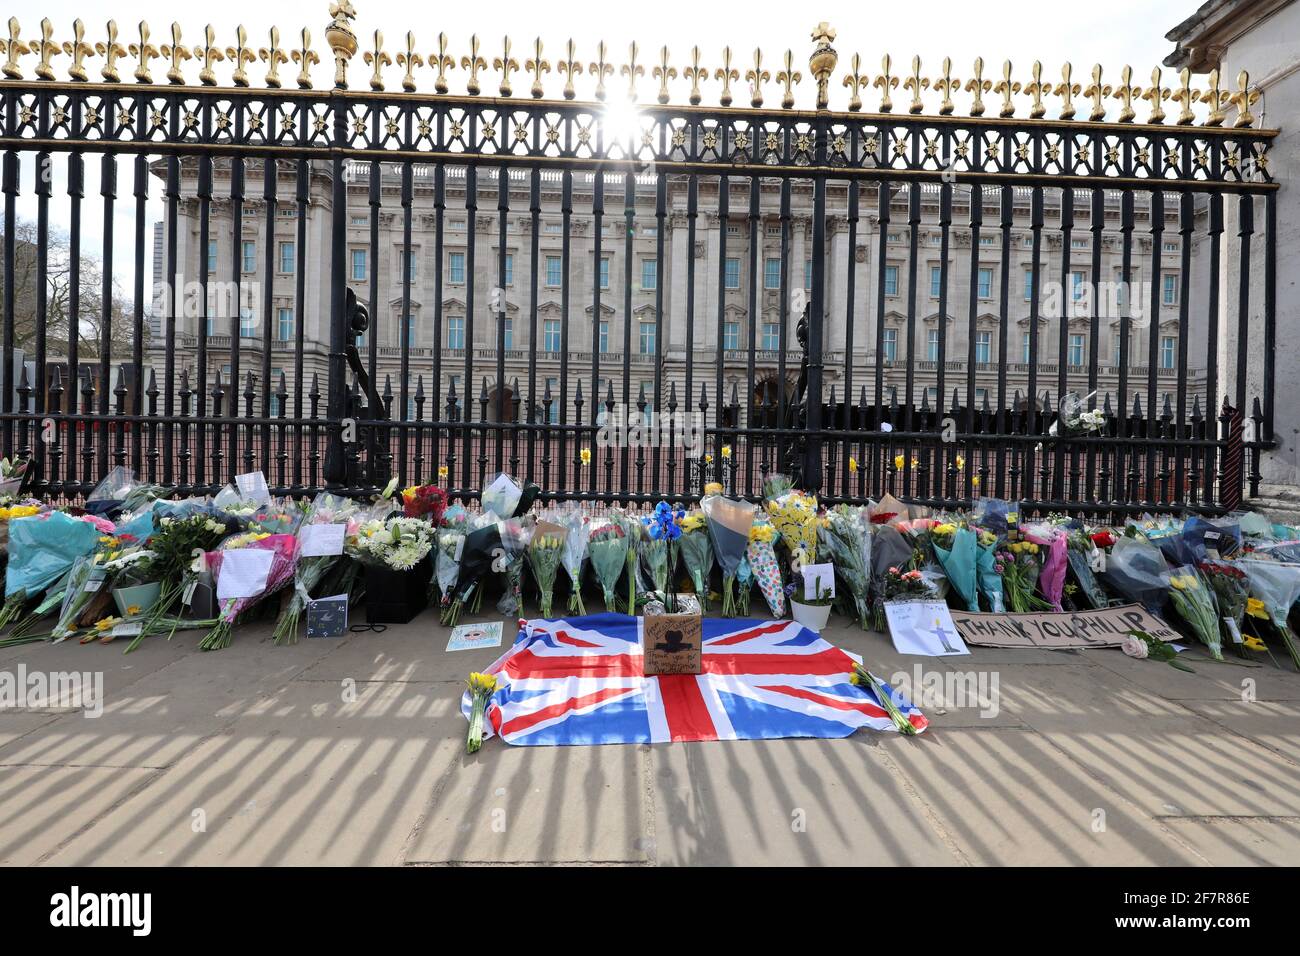 Londra, Regno Unito. 9 Apr 2021. Tributi floreali da parte della gente a Buckingham Palace dopo l'annuncio della morte del principe Filippo di credito: Paul Brown/Alamy Live News Foto Stock